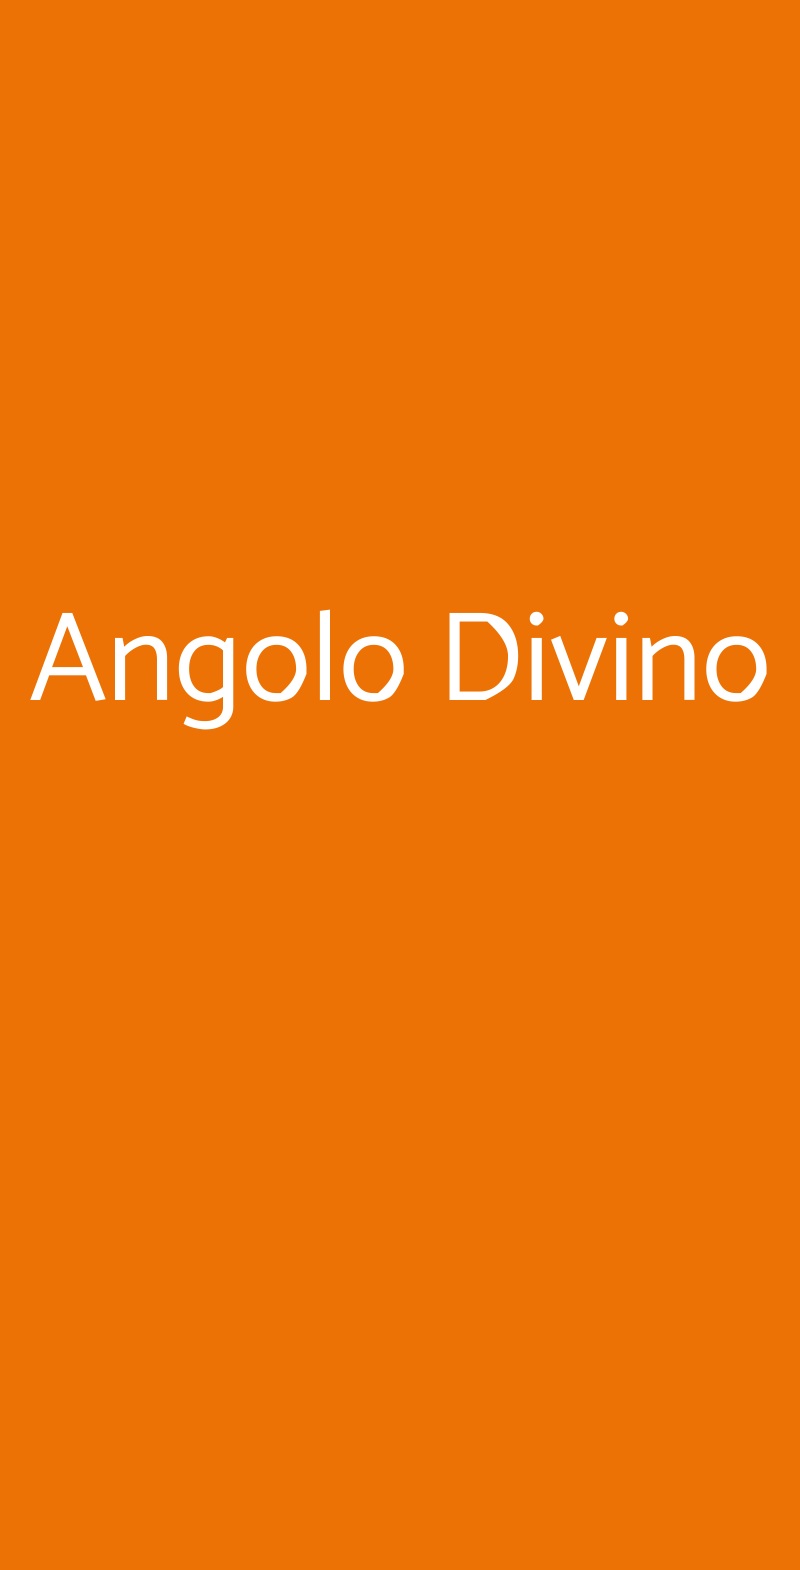 Angolo Divino Ascoli Piceno menù 1 pagina